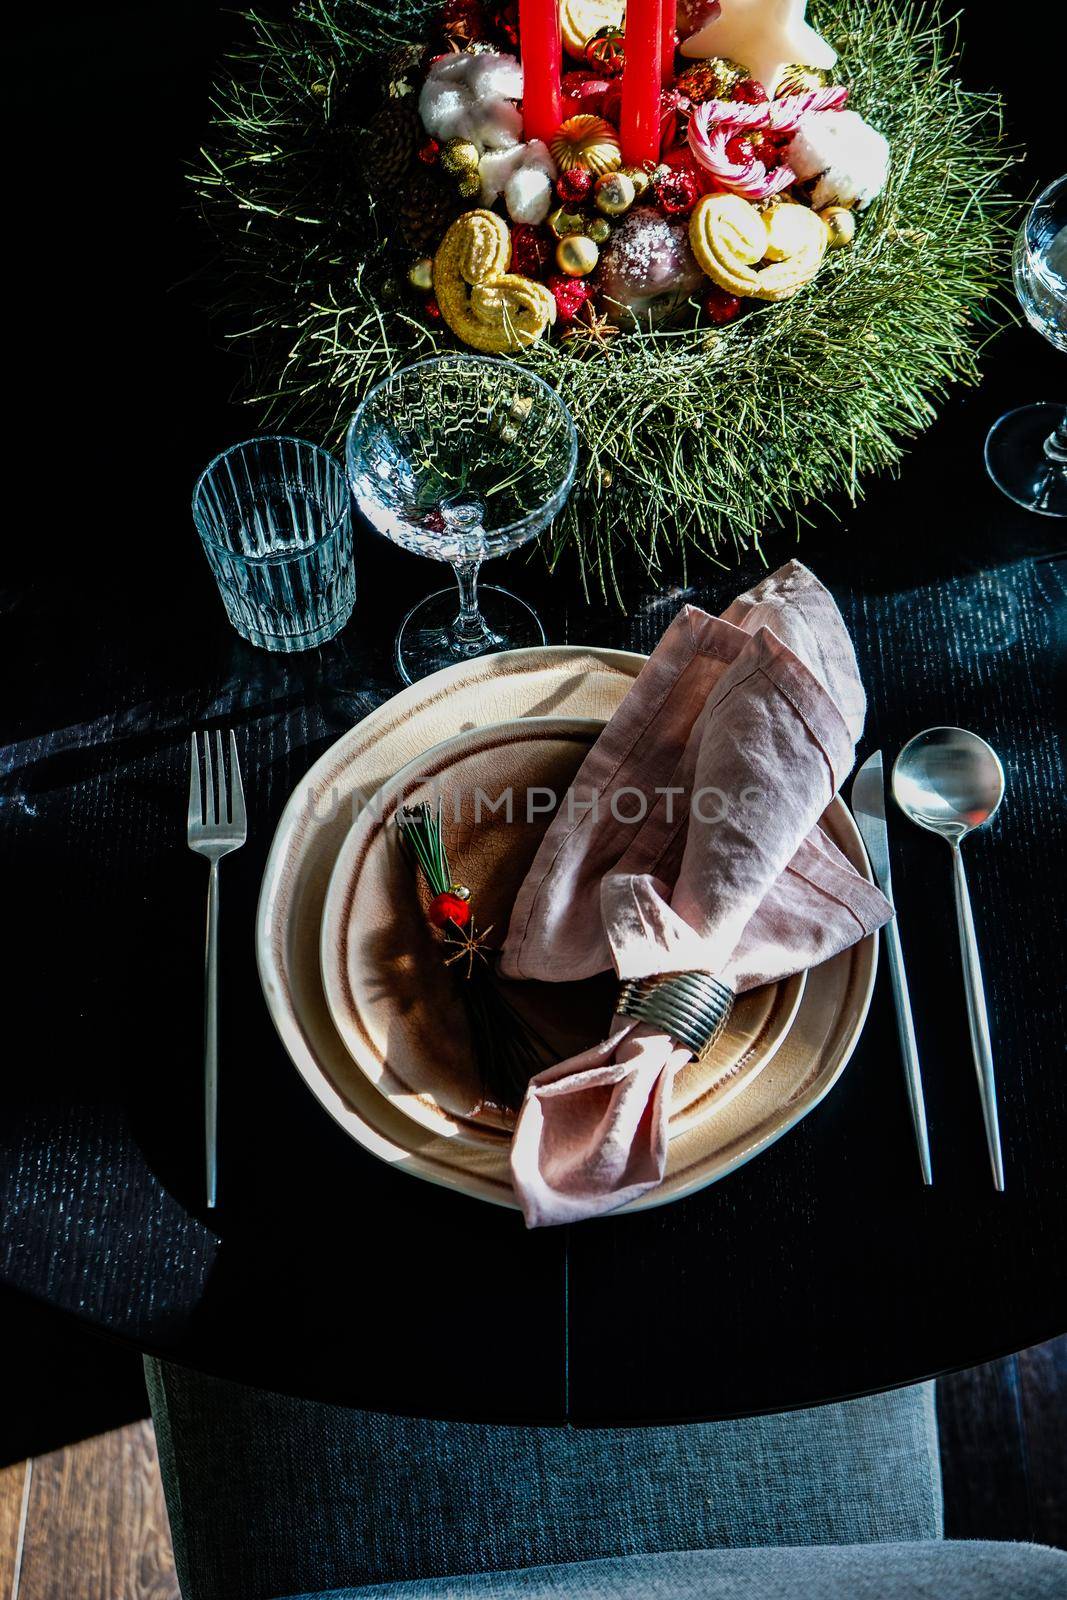 Table setting for festive Christmas dinner on black wooden table